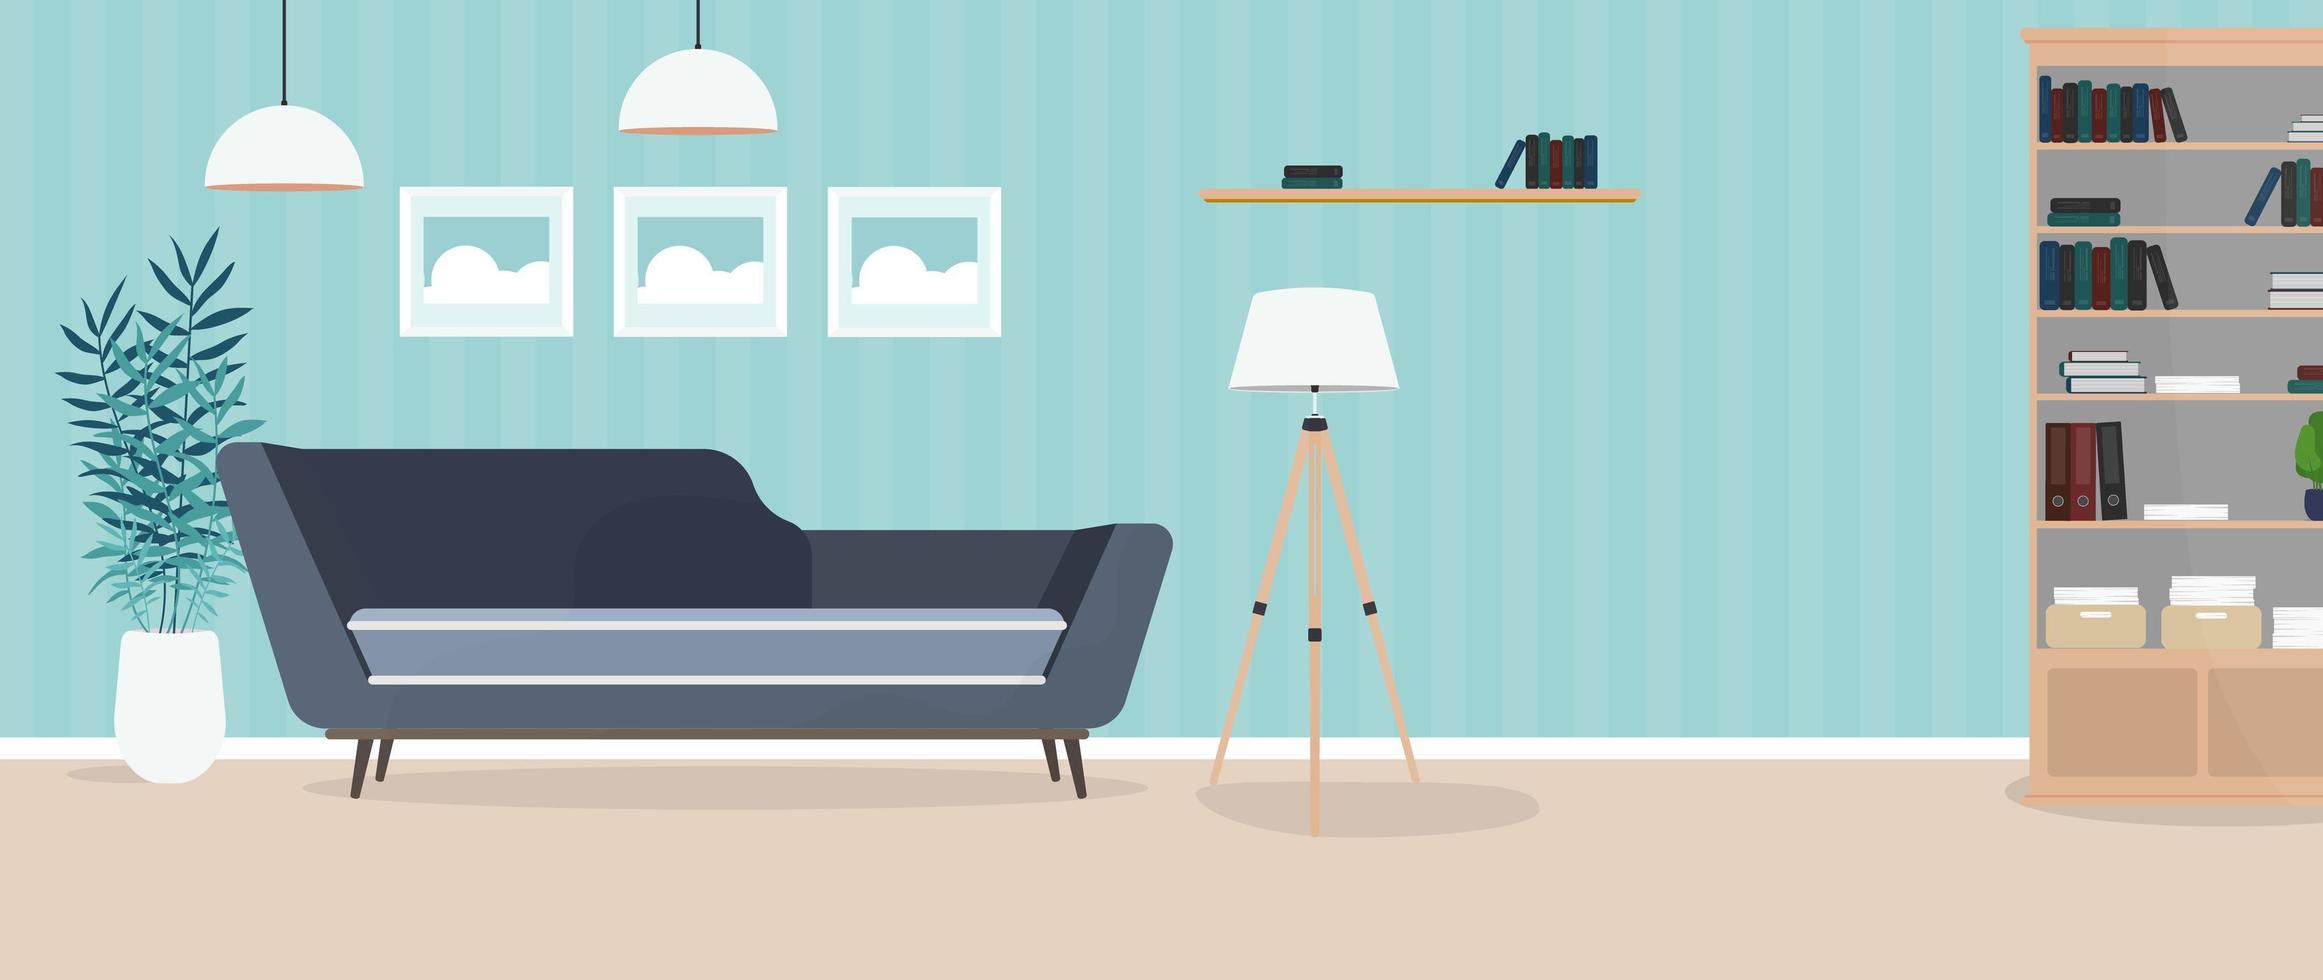 modernt ljust rum. vardagsrum med soffa, garderob, lampa, tavlor. möbel. interiör. vektor. vektor